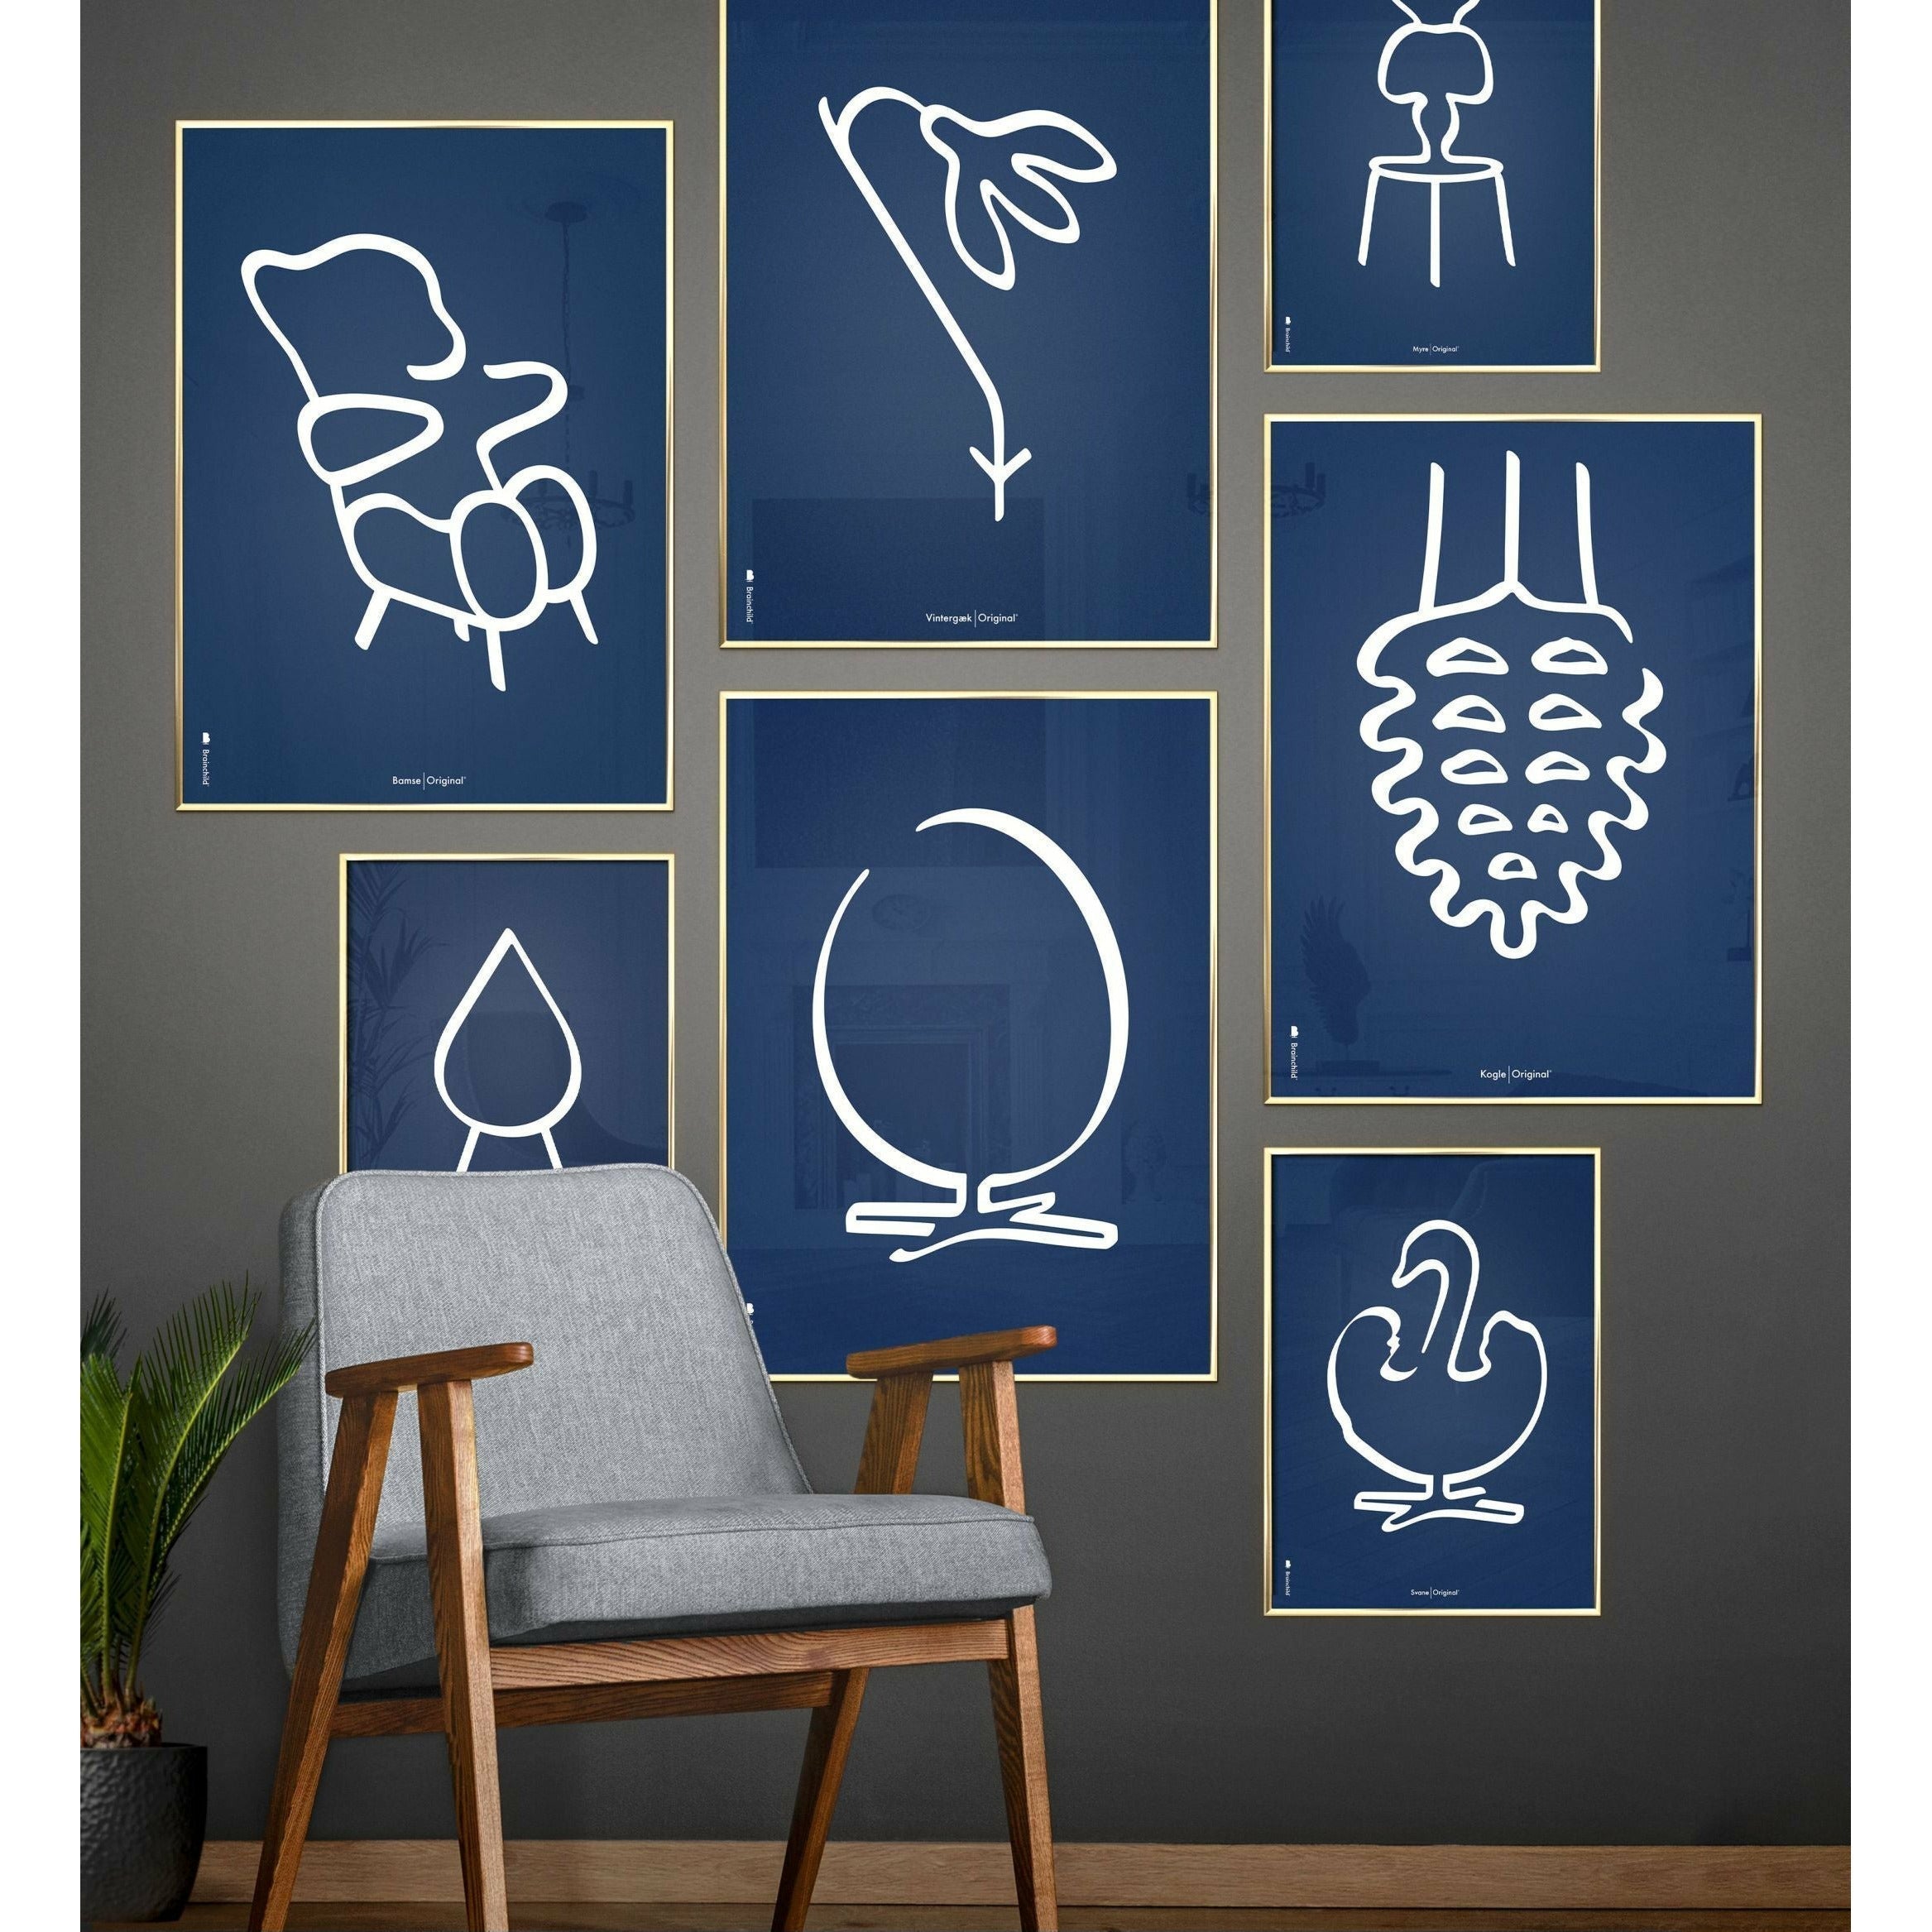 Pomysły plakat linii mrówek, rama w czarnym lakierowanym drewnie A5, niebieskie tło